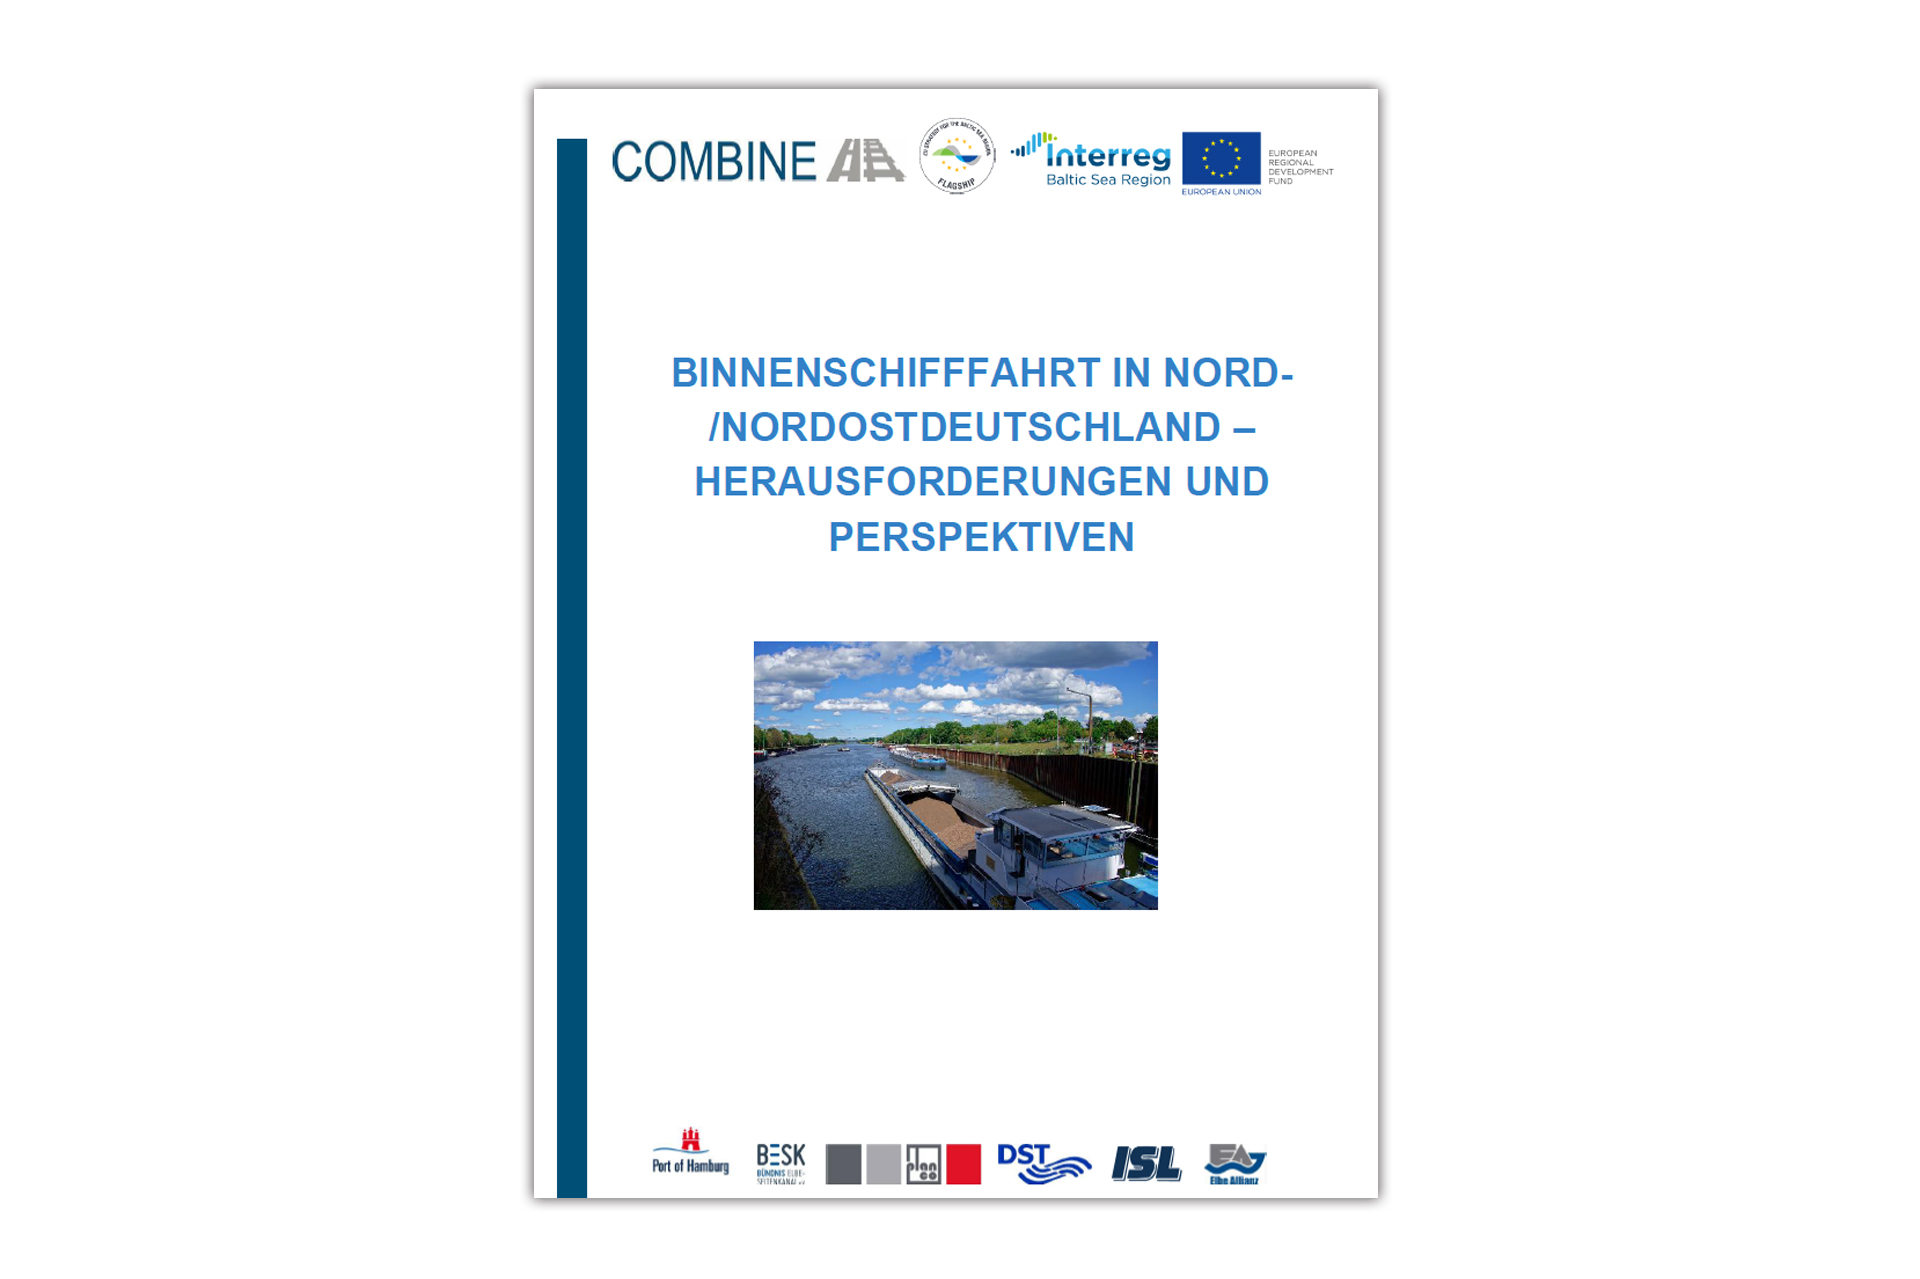 Binnenschifffahrt in Nord-/Nordostdeutschland – Herausforderungen und Perspektiven